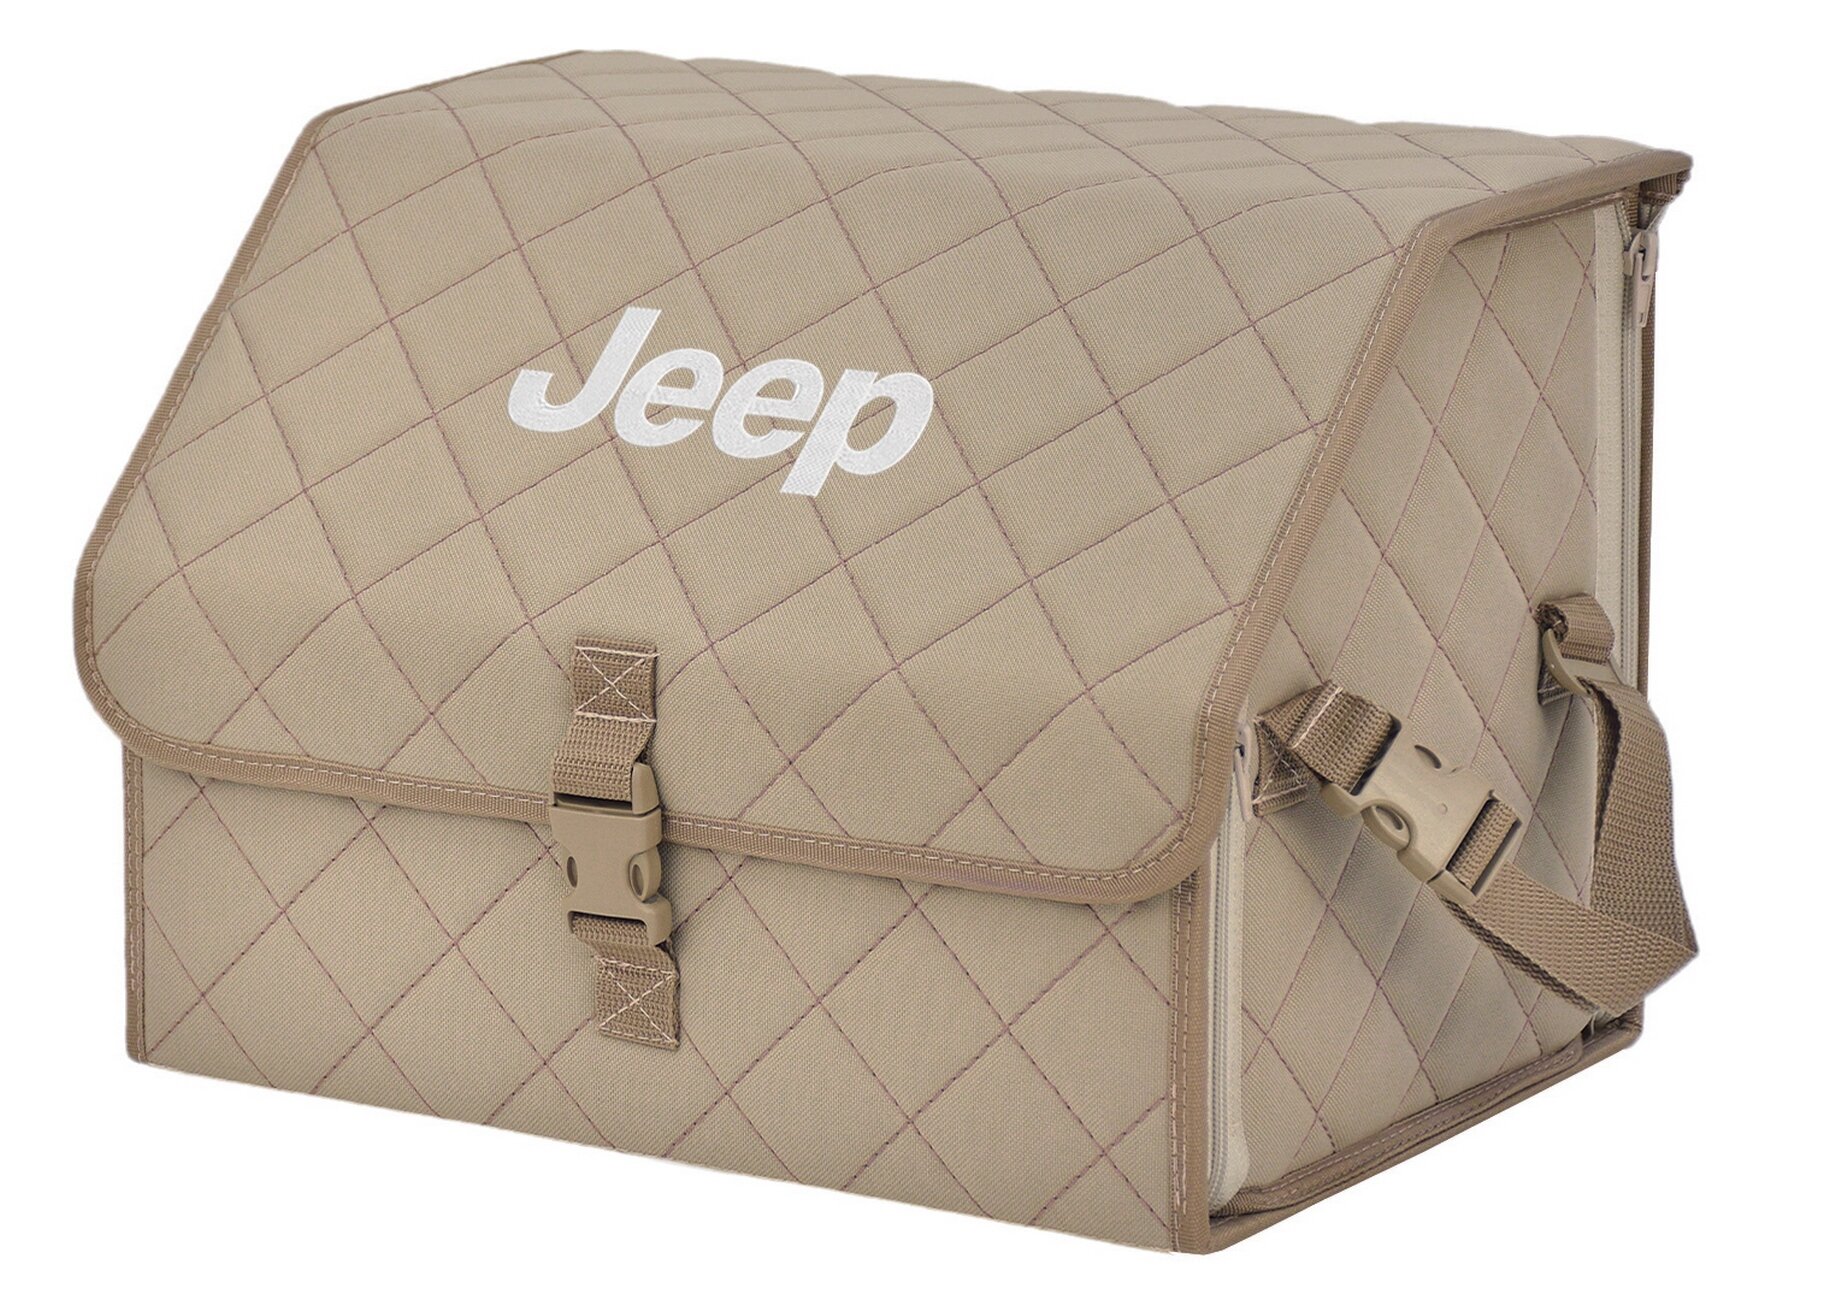 Органайзер-саквояж в багажник "Союз" (размер M). Цвет: бежевый с бежевой прострочкой Ромб и вышивкой Jeep (Джип).